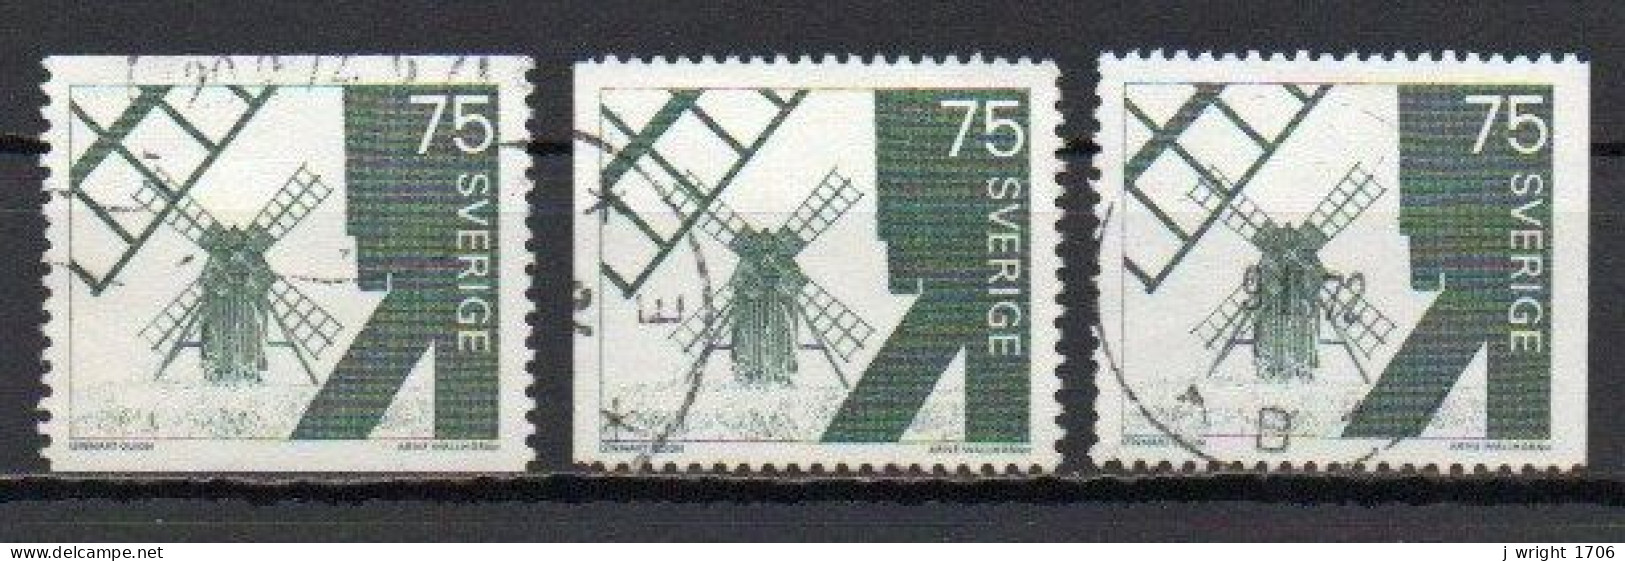 Sweden, 1971, Windmill Ölana Island, 75ö, USED - Oblitérés